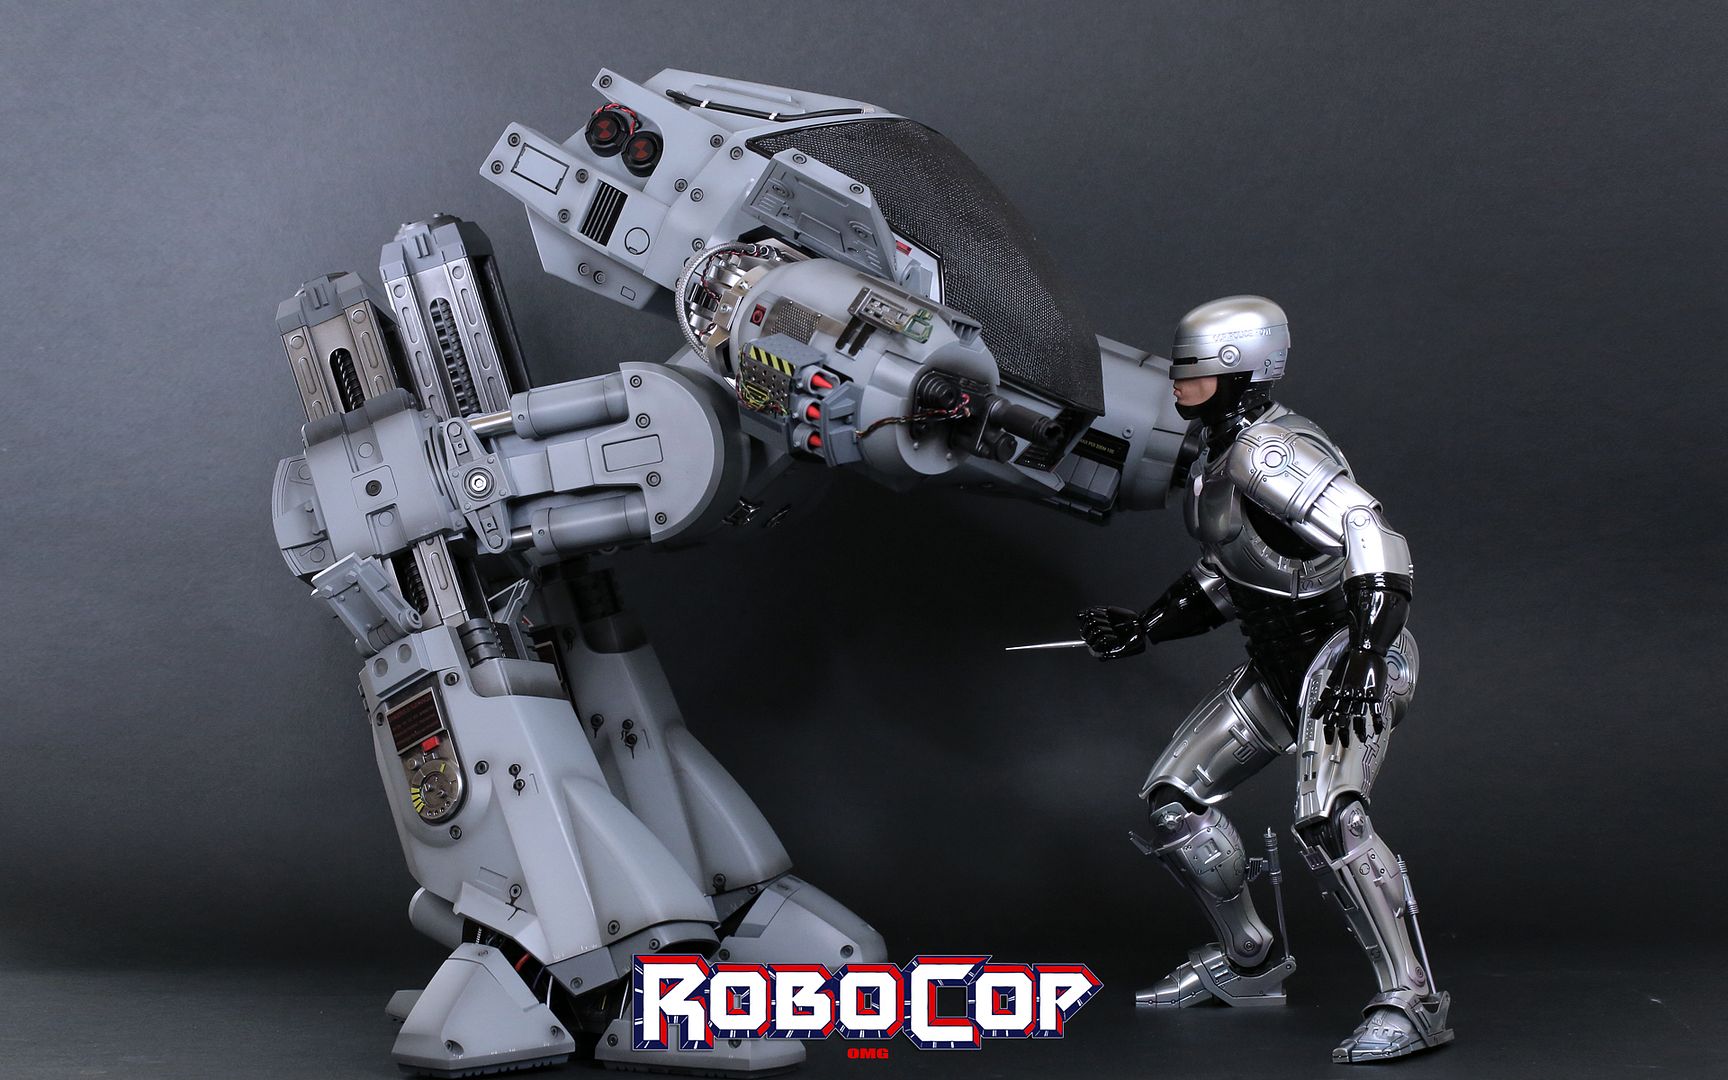 RobocopHD301_zps71d2d118.jpg